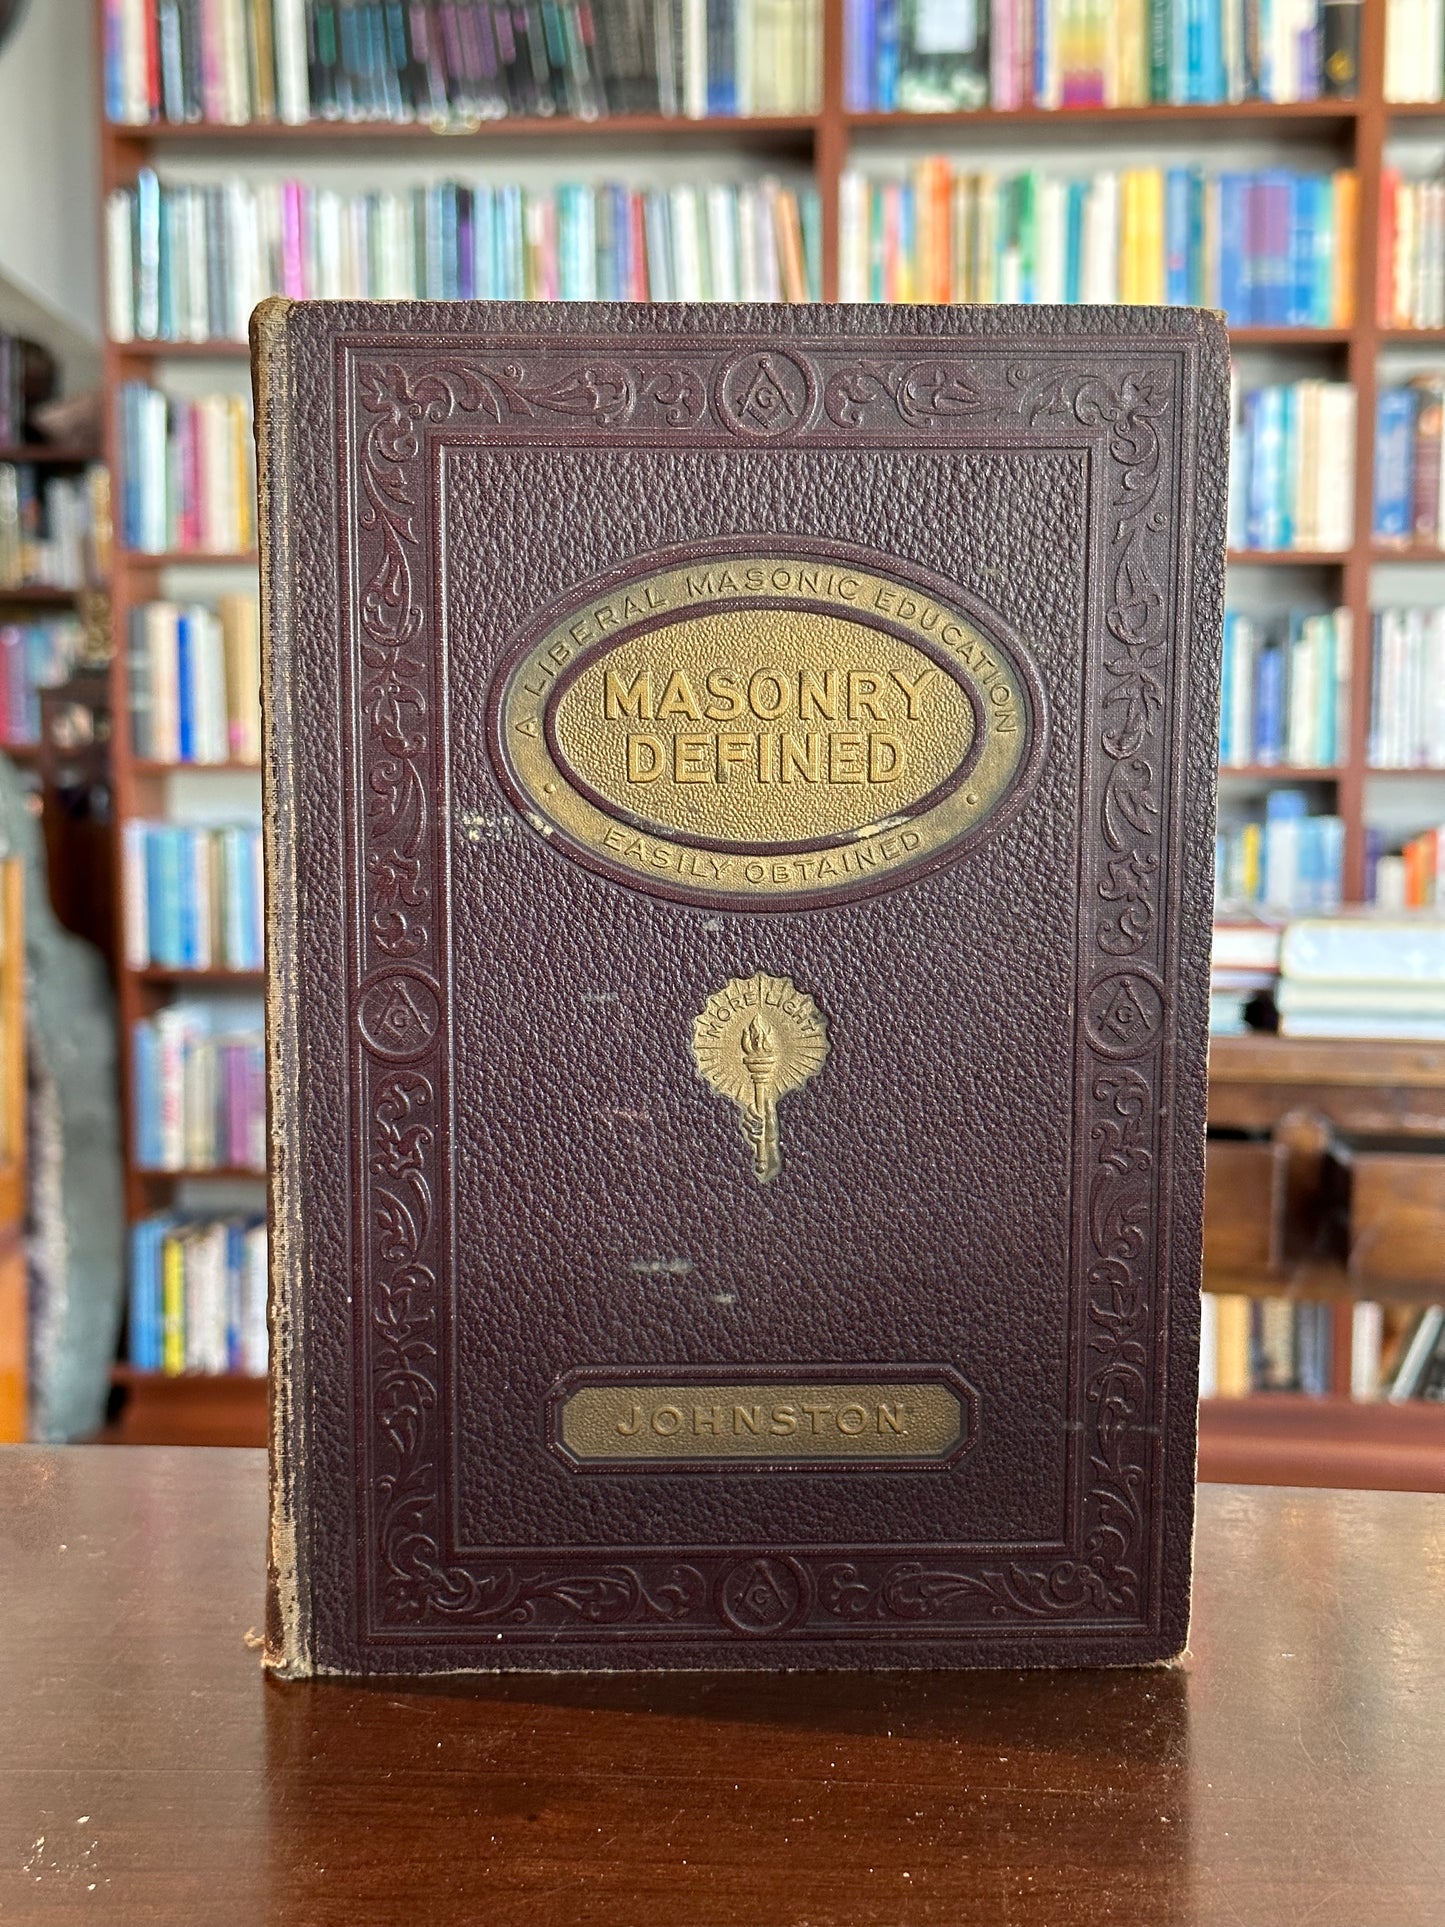 Masonry Defined by Dr. Albert Mackey & E.R. Johnston